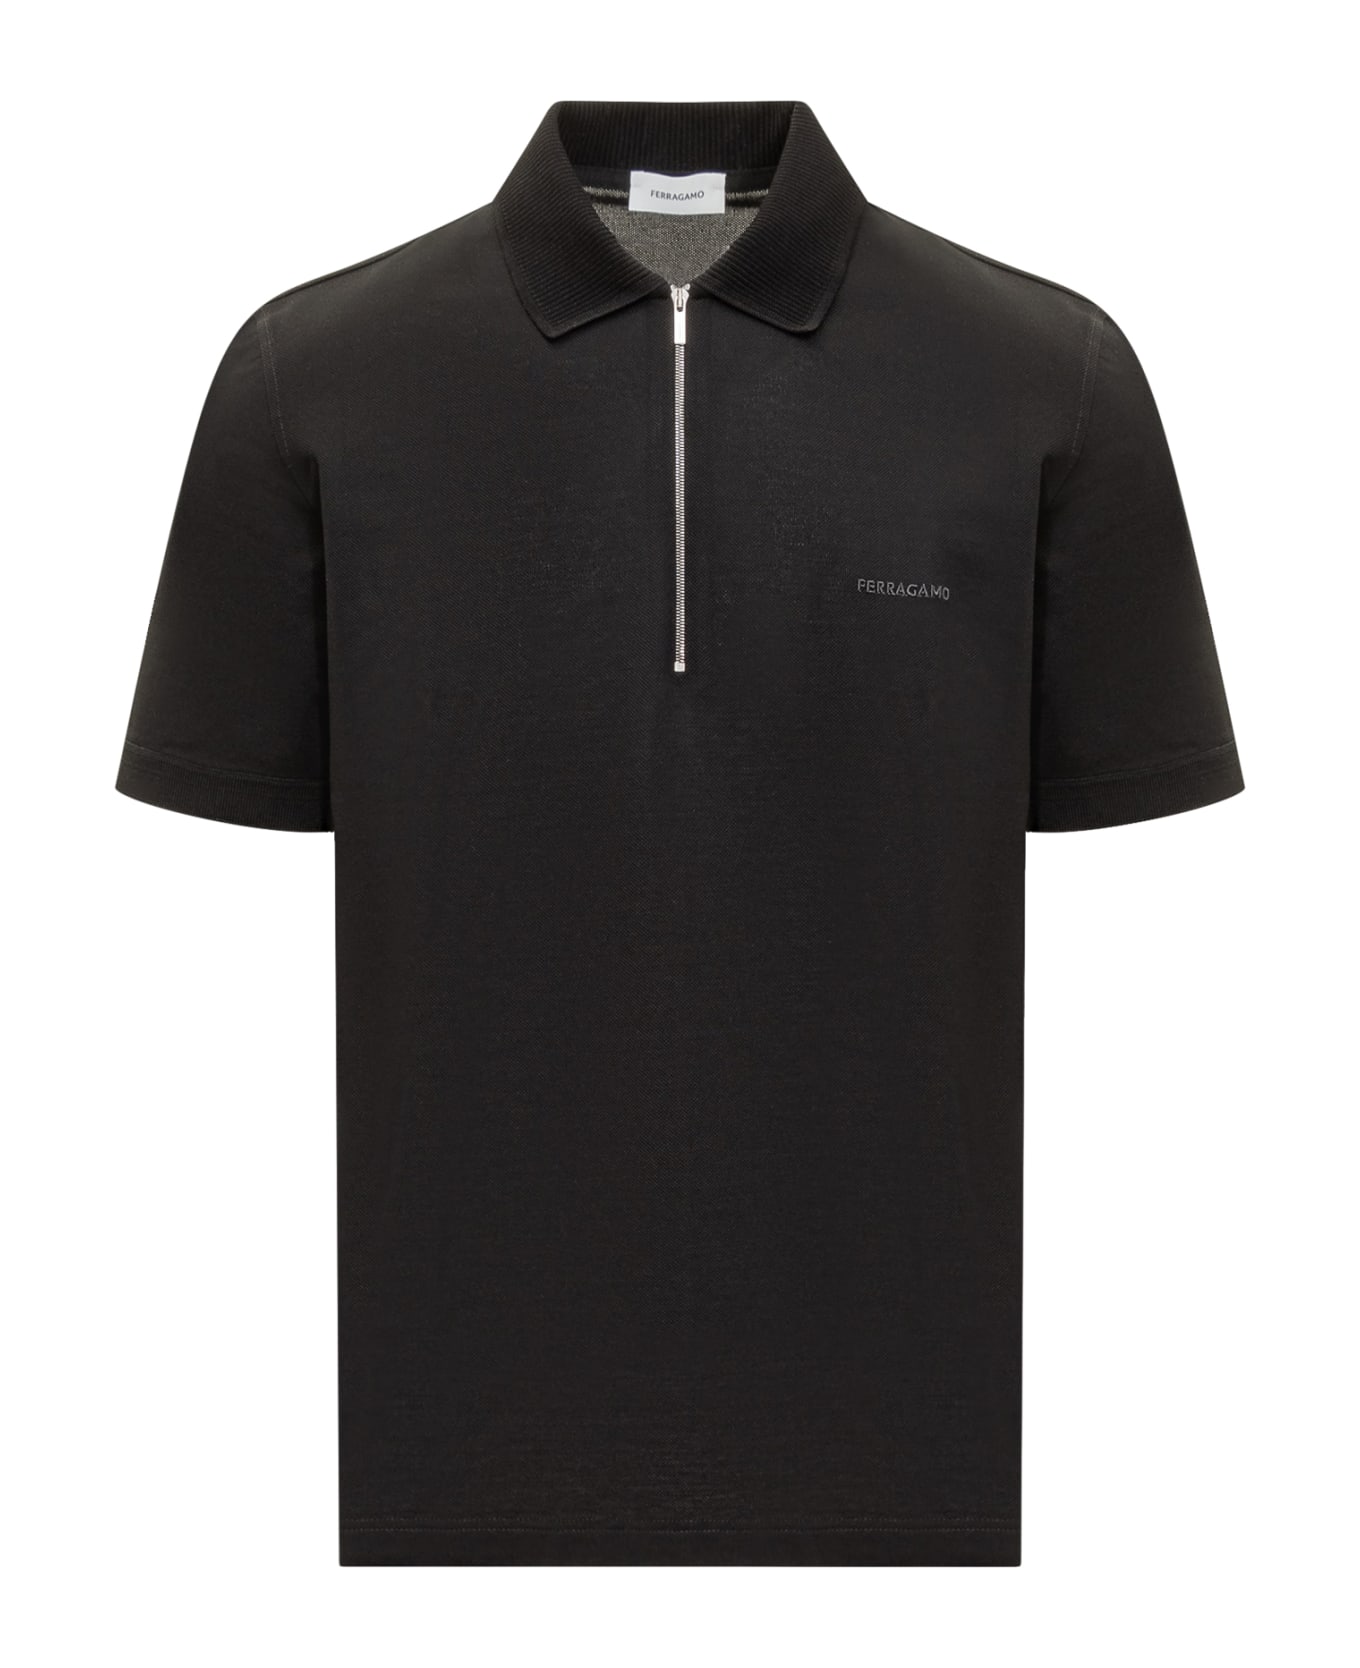 Ferragamo Cotton Pique Polo Shirt - Black